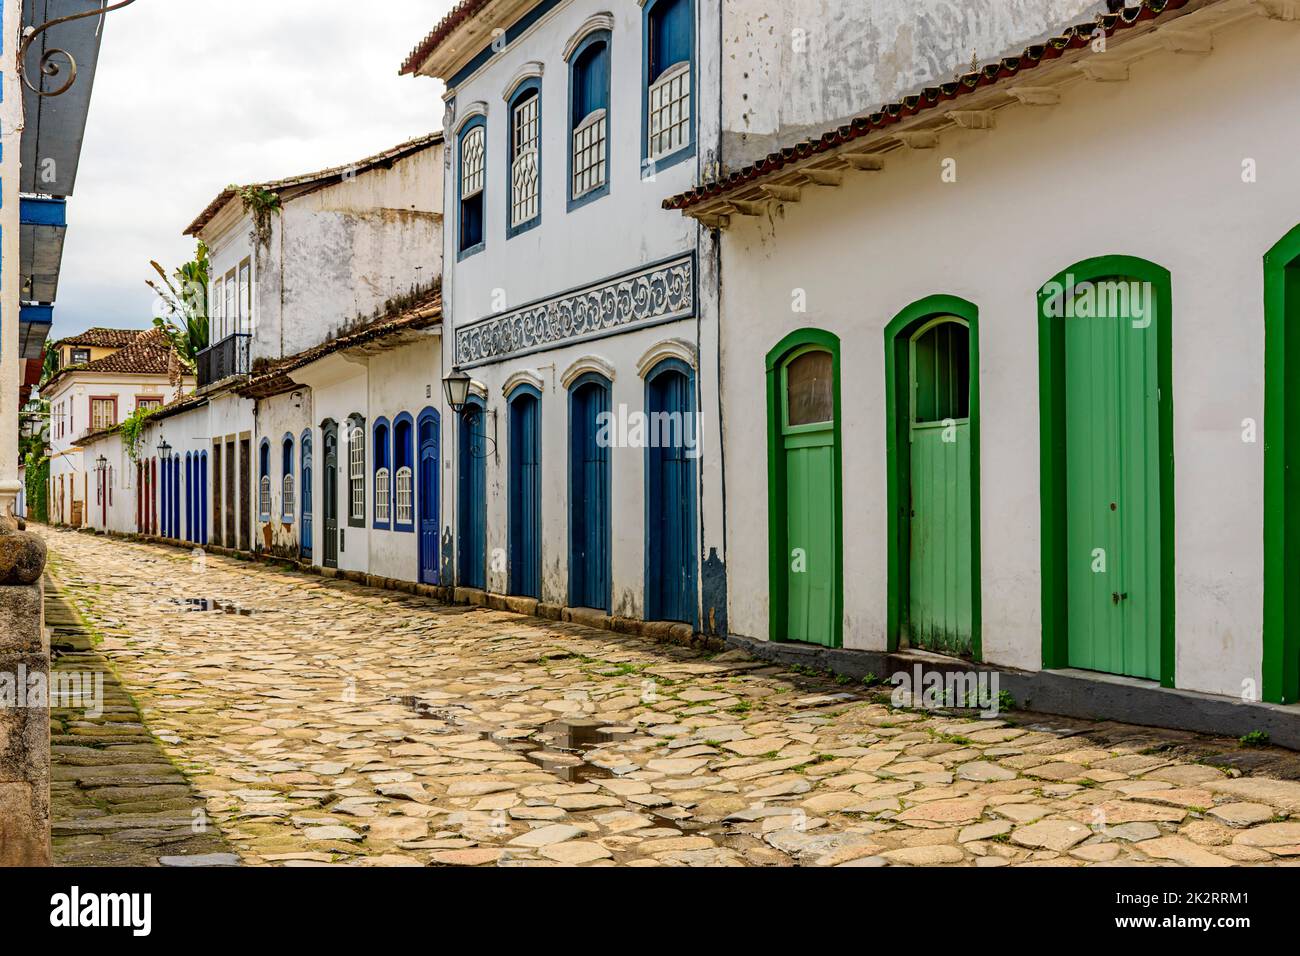 Façades de maisons anciennes de style colonial sur les rues de Paraty Banque D'Images